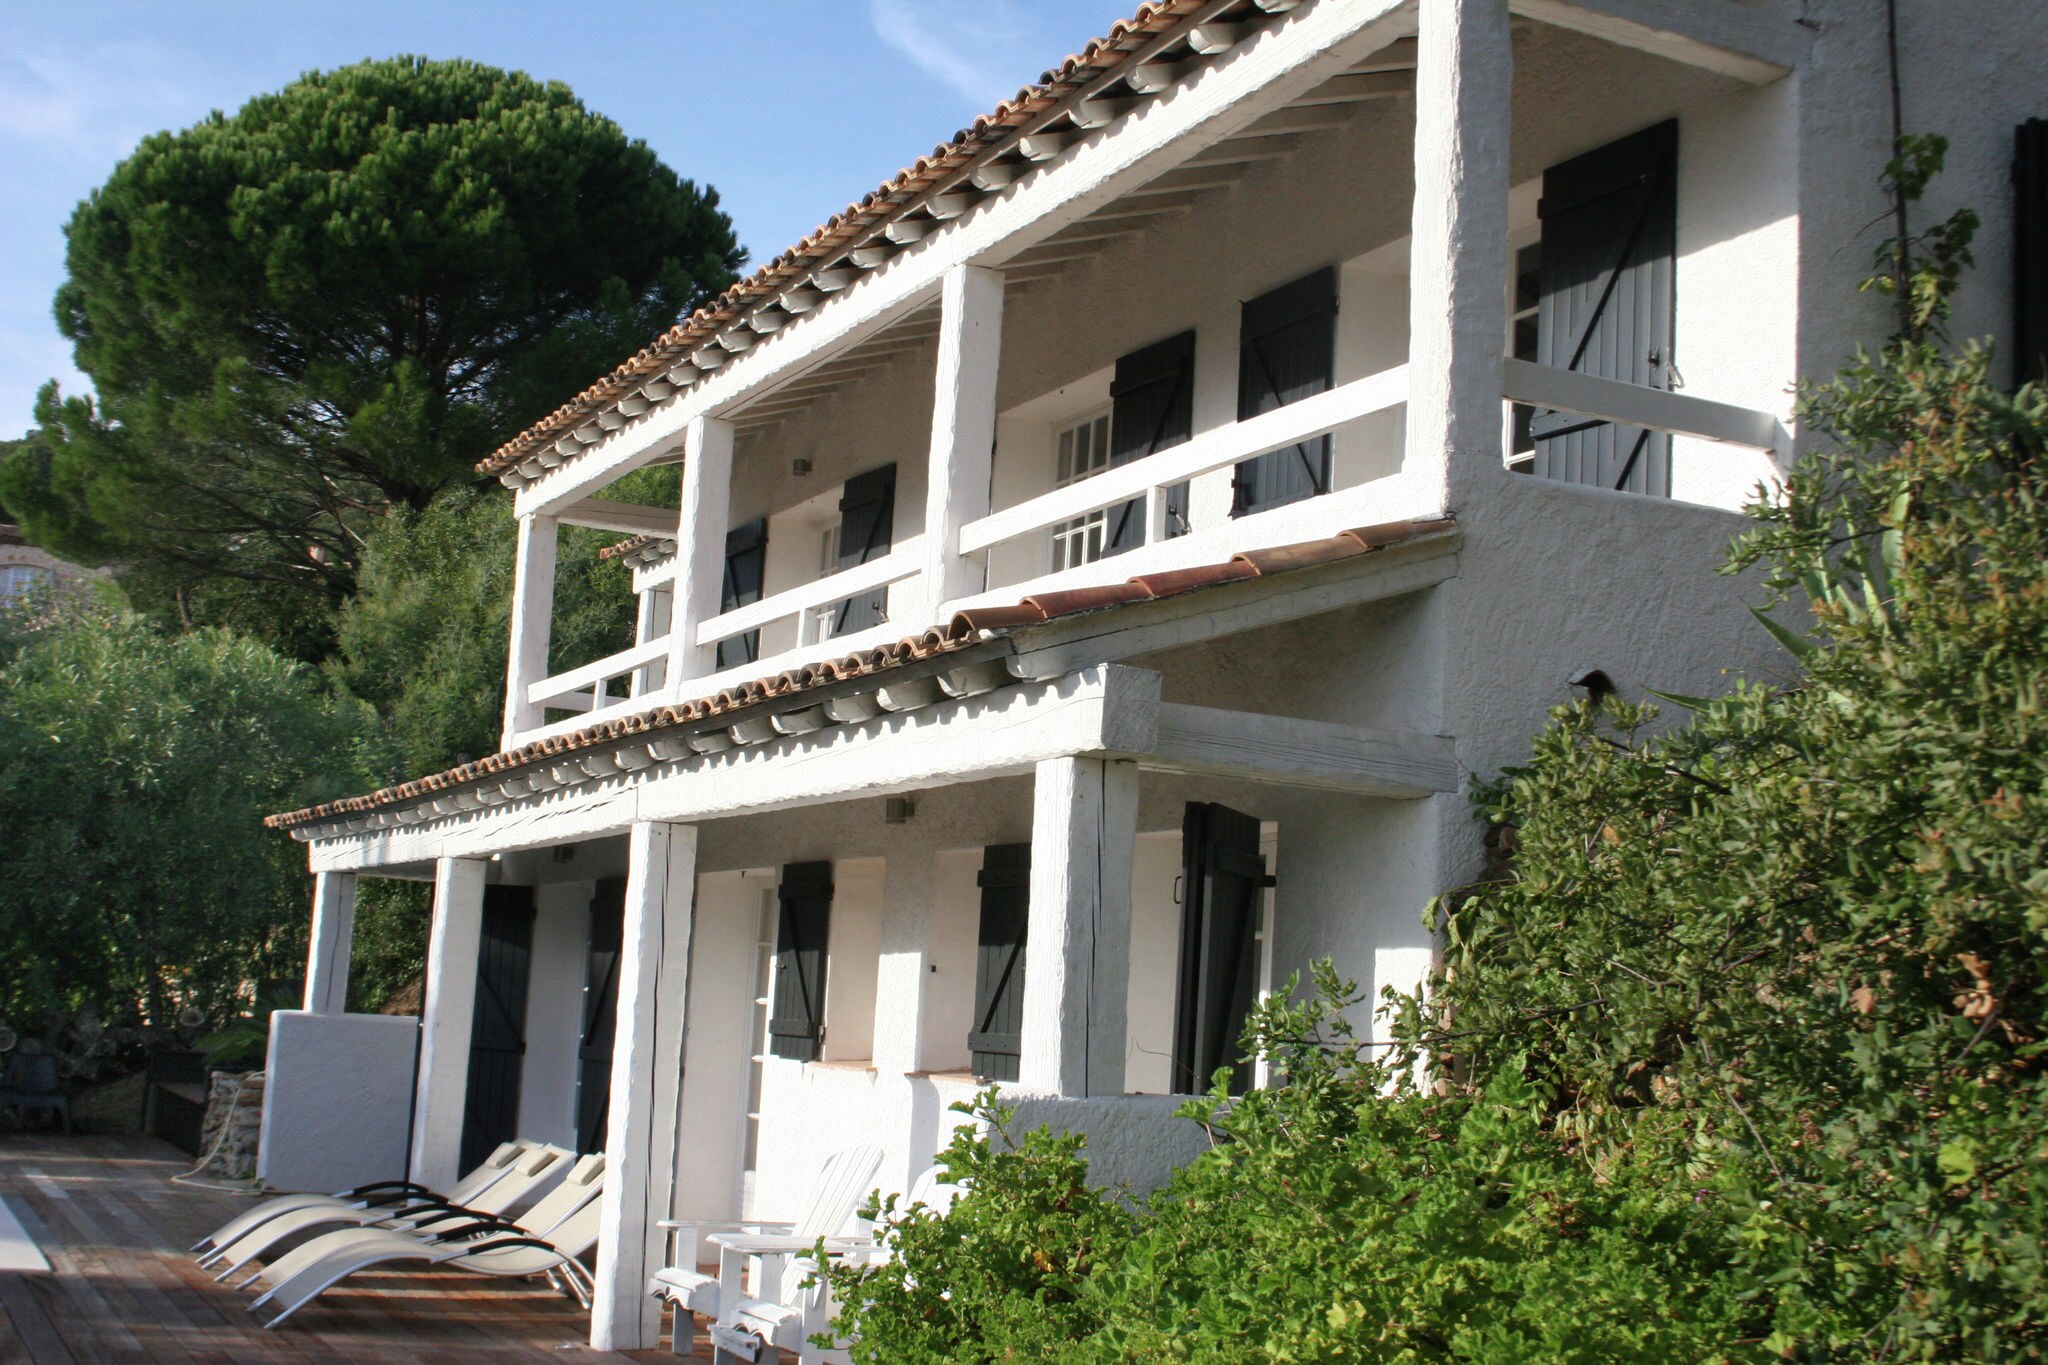 Villa indépendante avec piscine privée et vue panoramique sur la Méditerranée